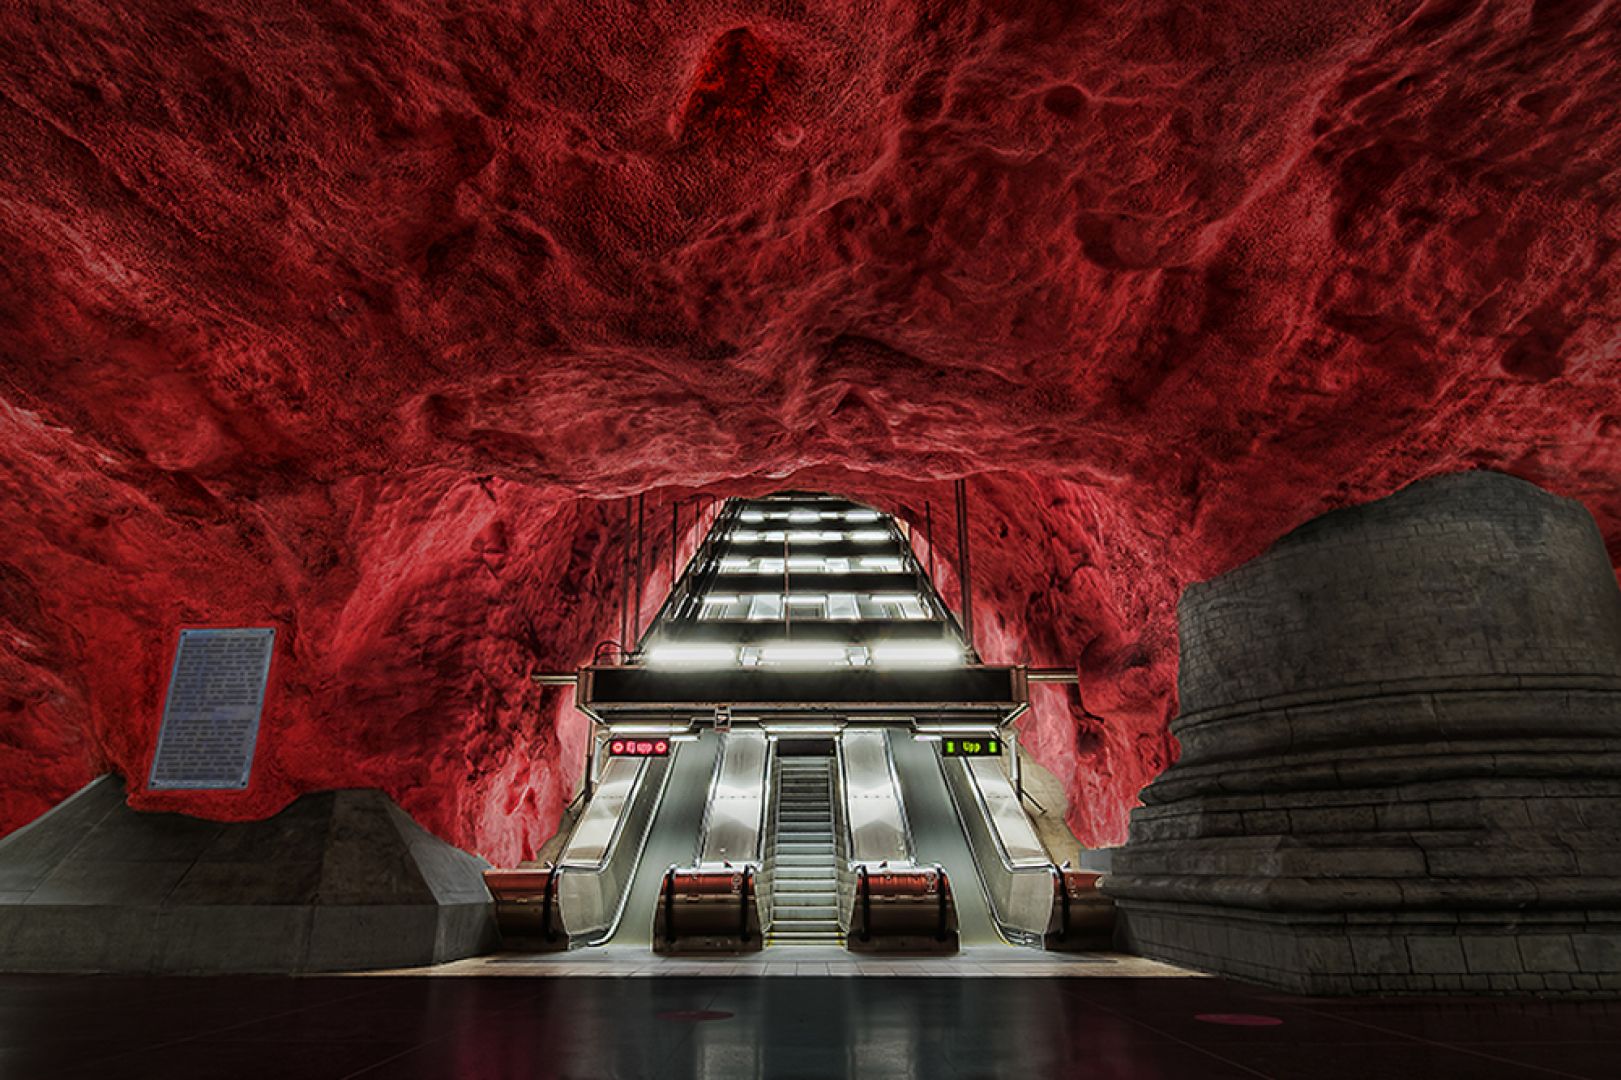 Rådhuset Station - Metro w Sztokholmie zostało otwarte w 1950 r., a w miarę upływu czasu jego przestrzeń zaczęły zapełniać zapierające dech w piersiach dzieła sztuki. Fot. www.onedio.com